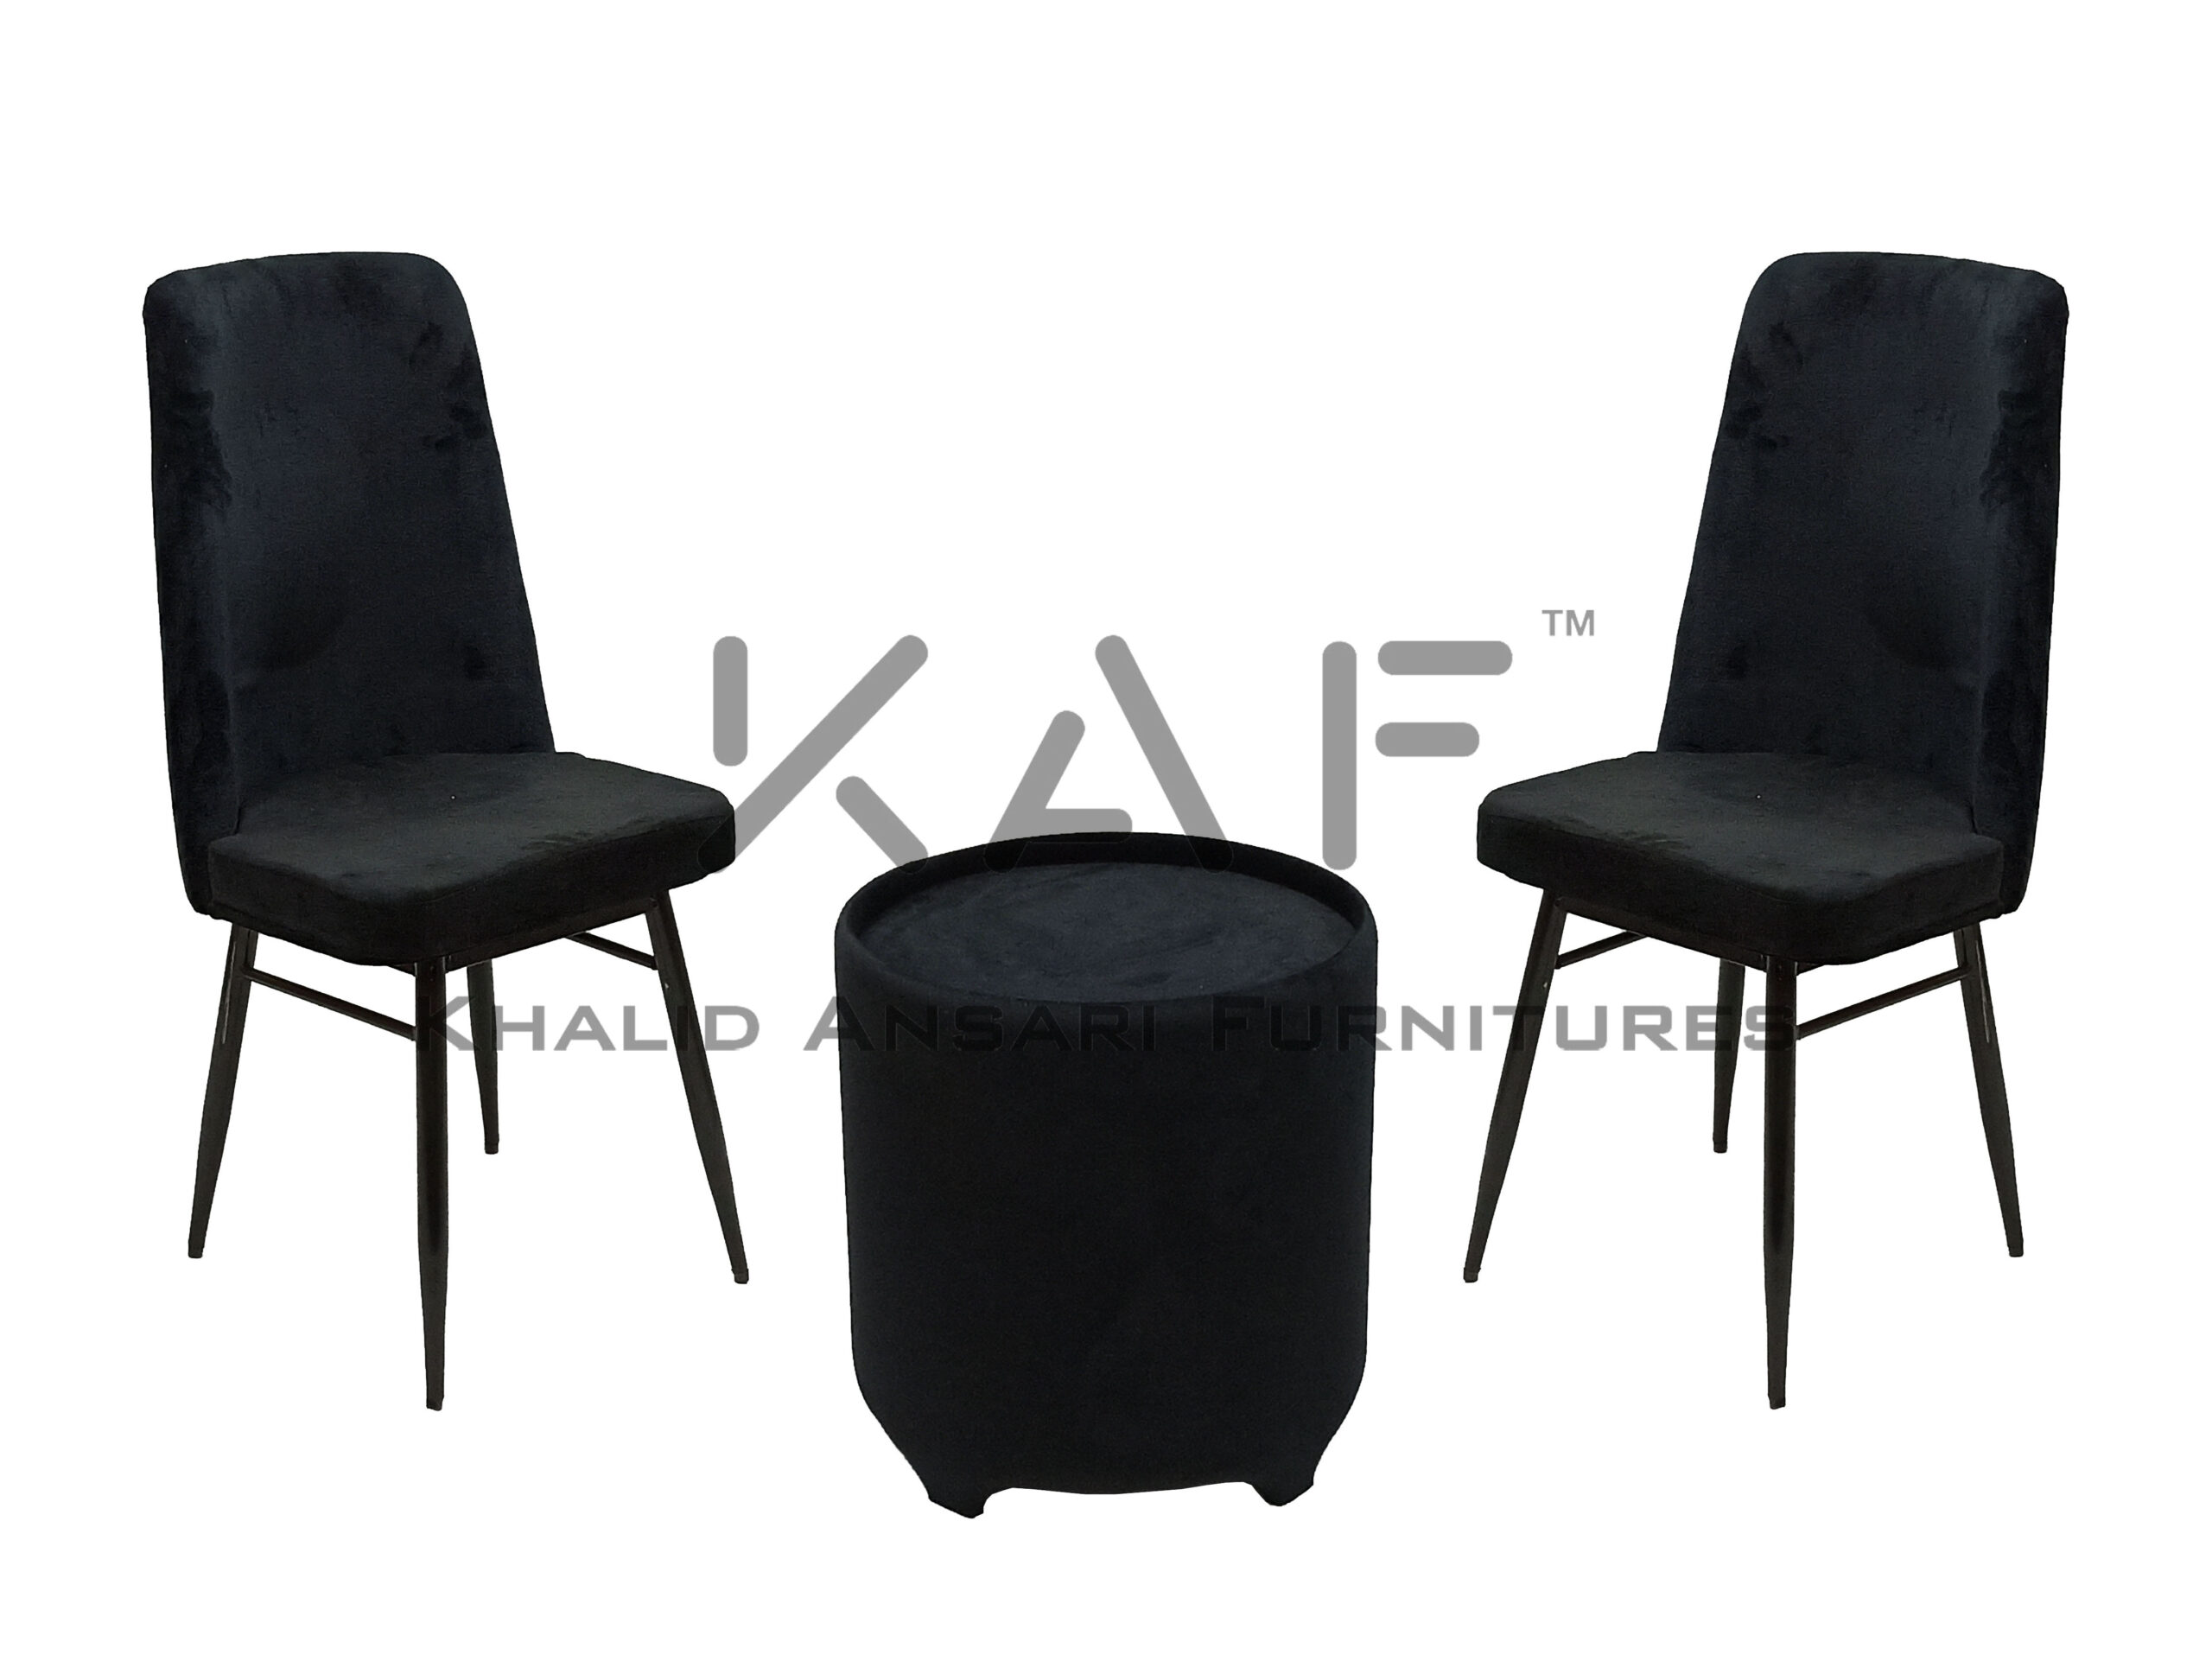 Bed Room Premium Chair & Dining Chair Black Velvet set with Black Velvet Tea Table - 2 Chairs + 1 Table